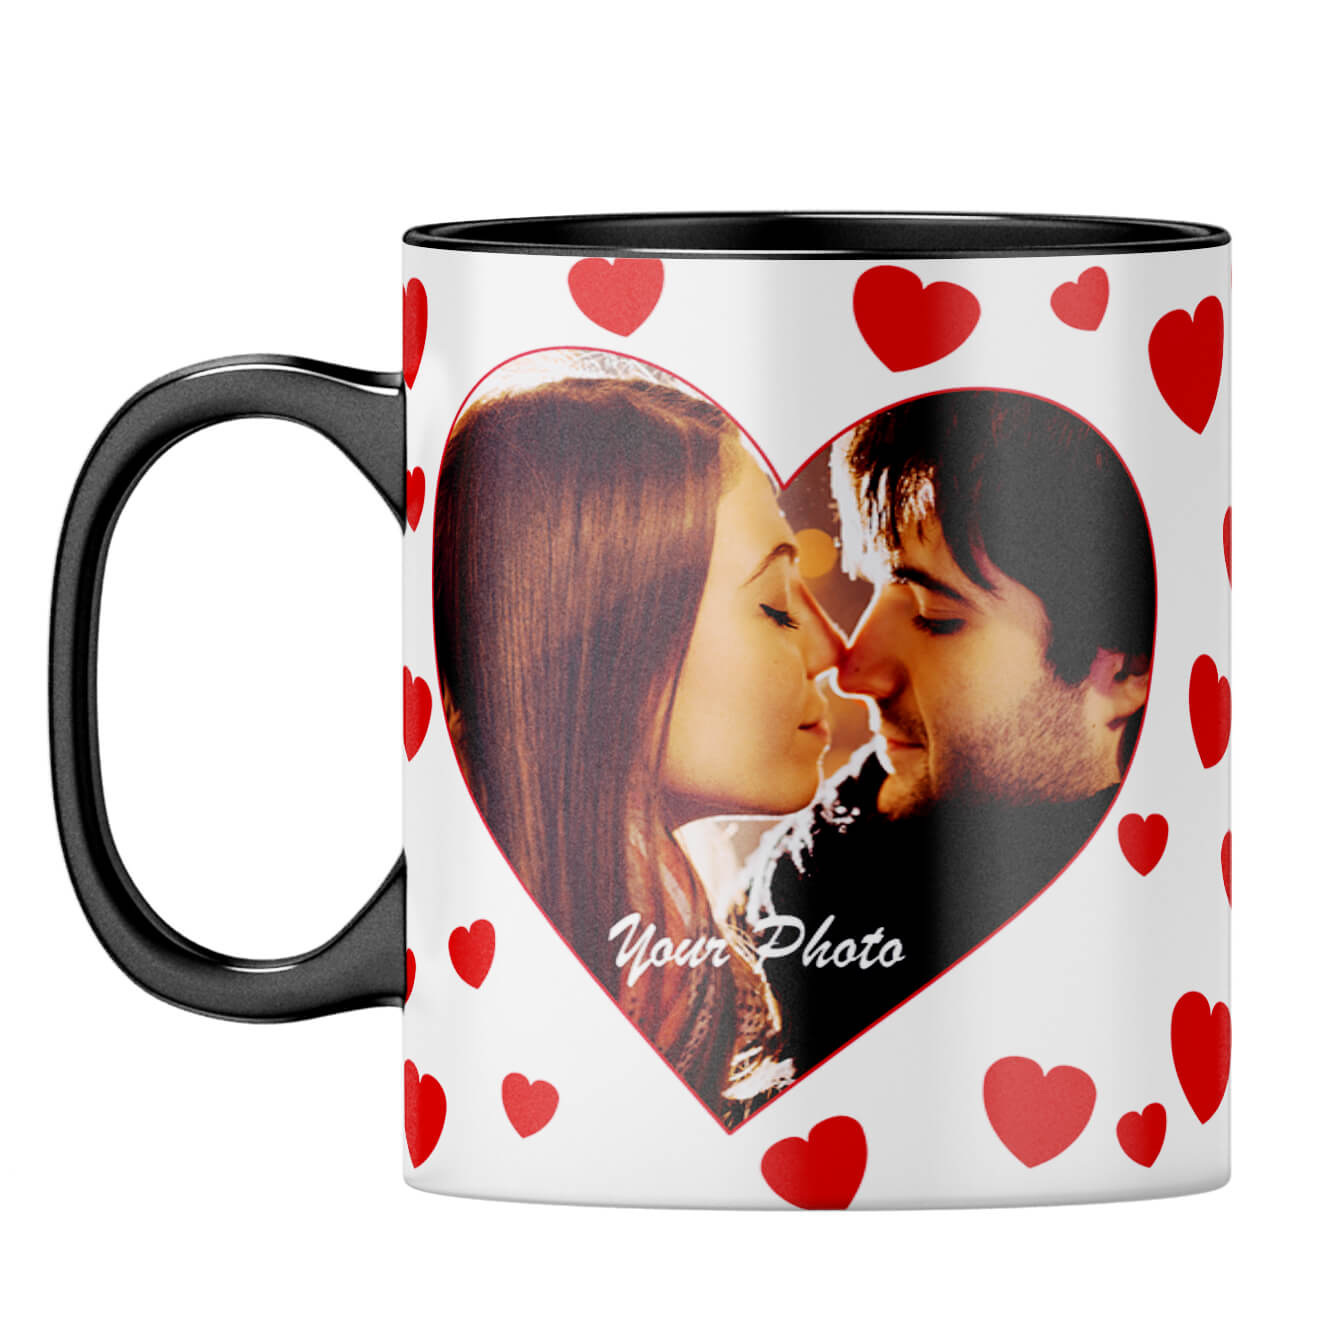 Loving Hearts Coffee Mug Black